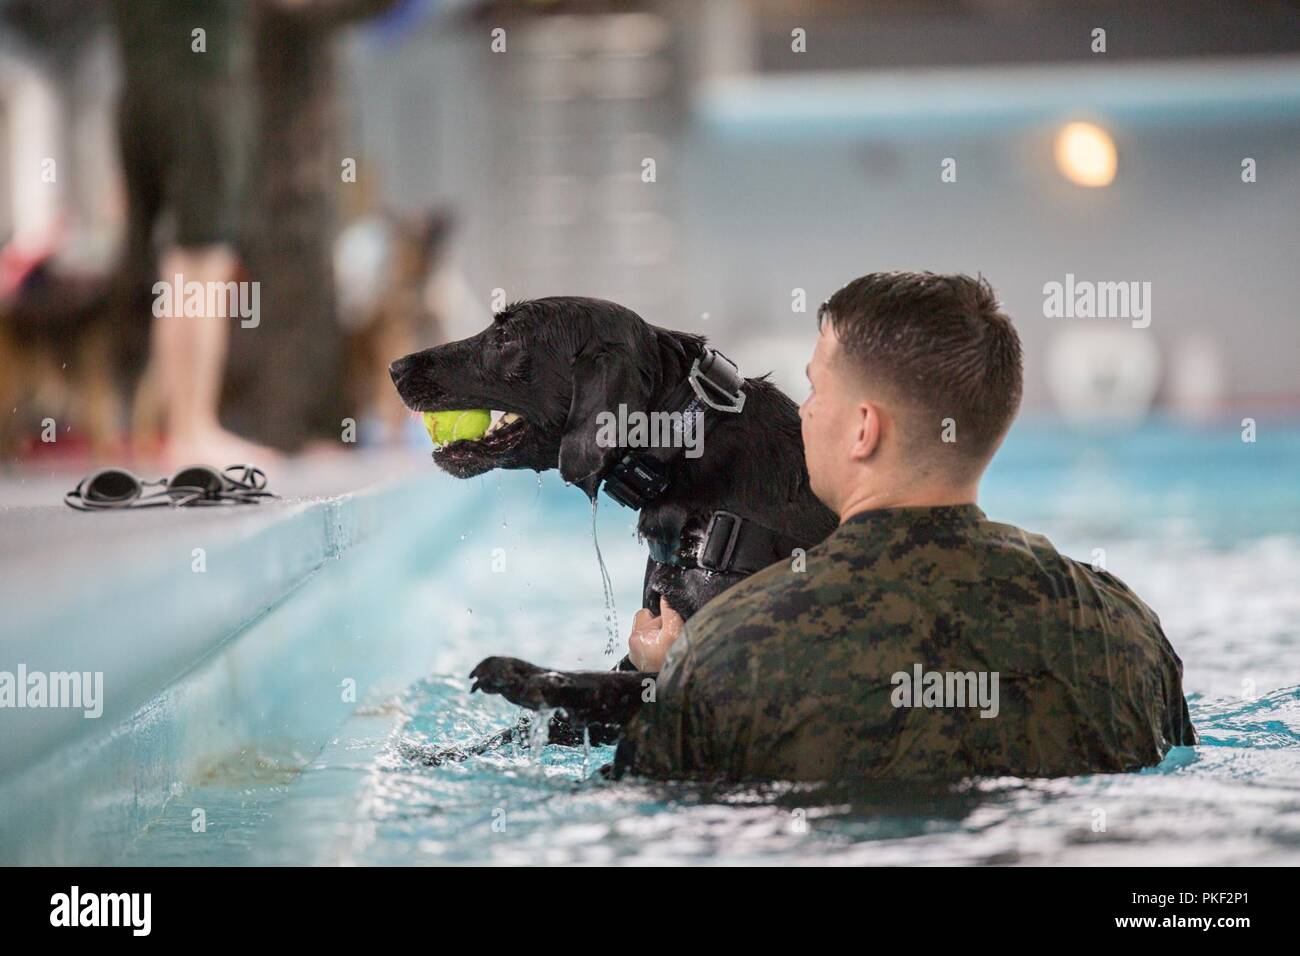 Lance le Cpl Colin McAninch, un 2e Bataillon de l'application de la Loi de travail militaire-chien-chien, aide son chien hors de l'eau brise après une baignade dans la zone 5 à la piscine Marine Corps Base Camp Lejeune, N.C., 3 août 2018. 2e LEB pratiqué l'agression de la formation dans le cadre d'une formation spécialisée afin de familiariser leurs chiens avec de l'eau. La 2e LEB chiens de travail militaire bénéficient de ce type de formation en raison de ne pas être exposé à l'eau pendant les périodes de formation initiale des tactiques et devenir de meilleurs habitués à effectuer des tâches dans des situations atypiques. Banque D'Images